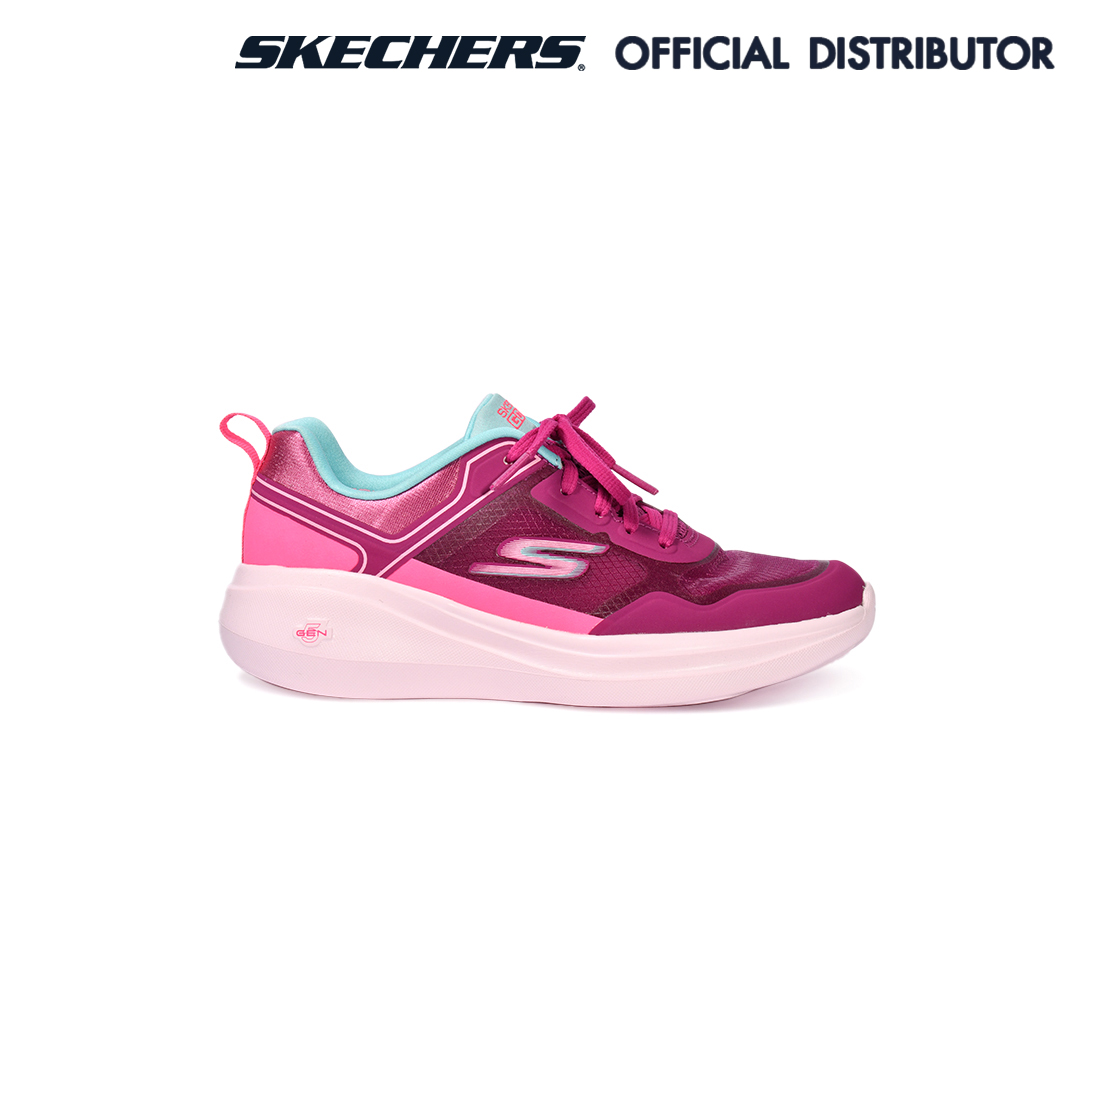 SKECHERS Gorun Fast - Retro Insight รองเท้าวิ่งผู้หญิง